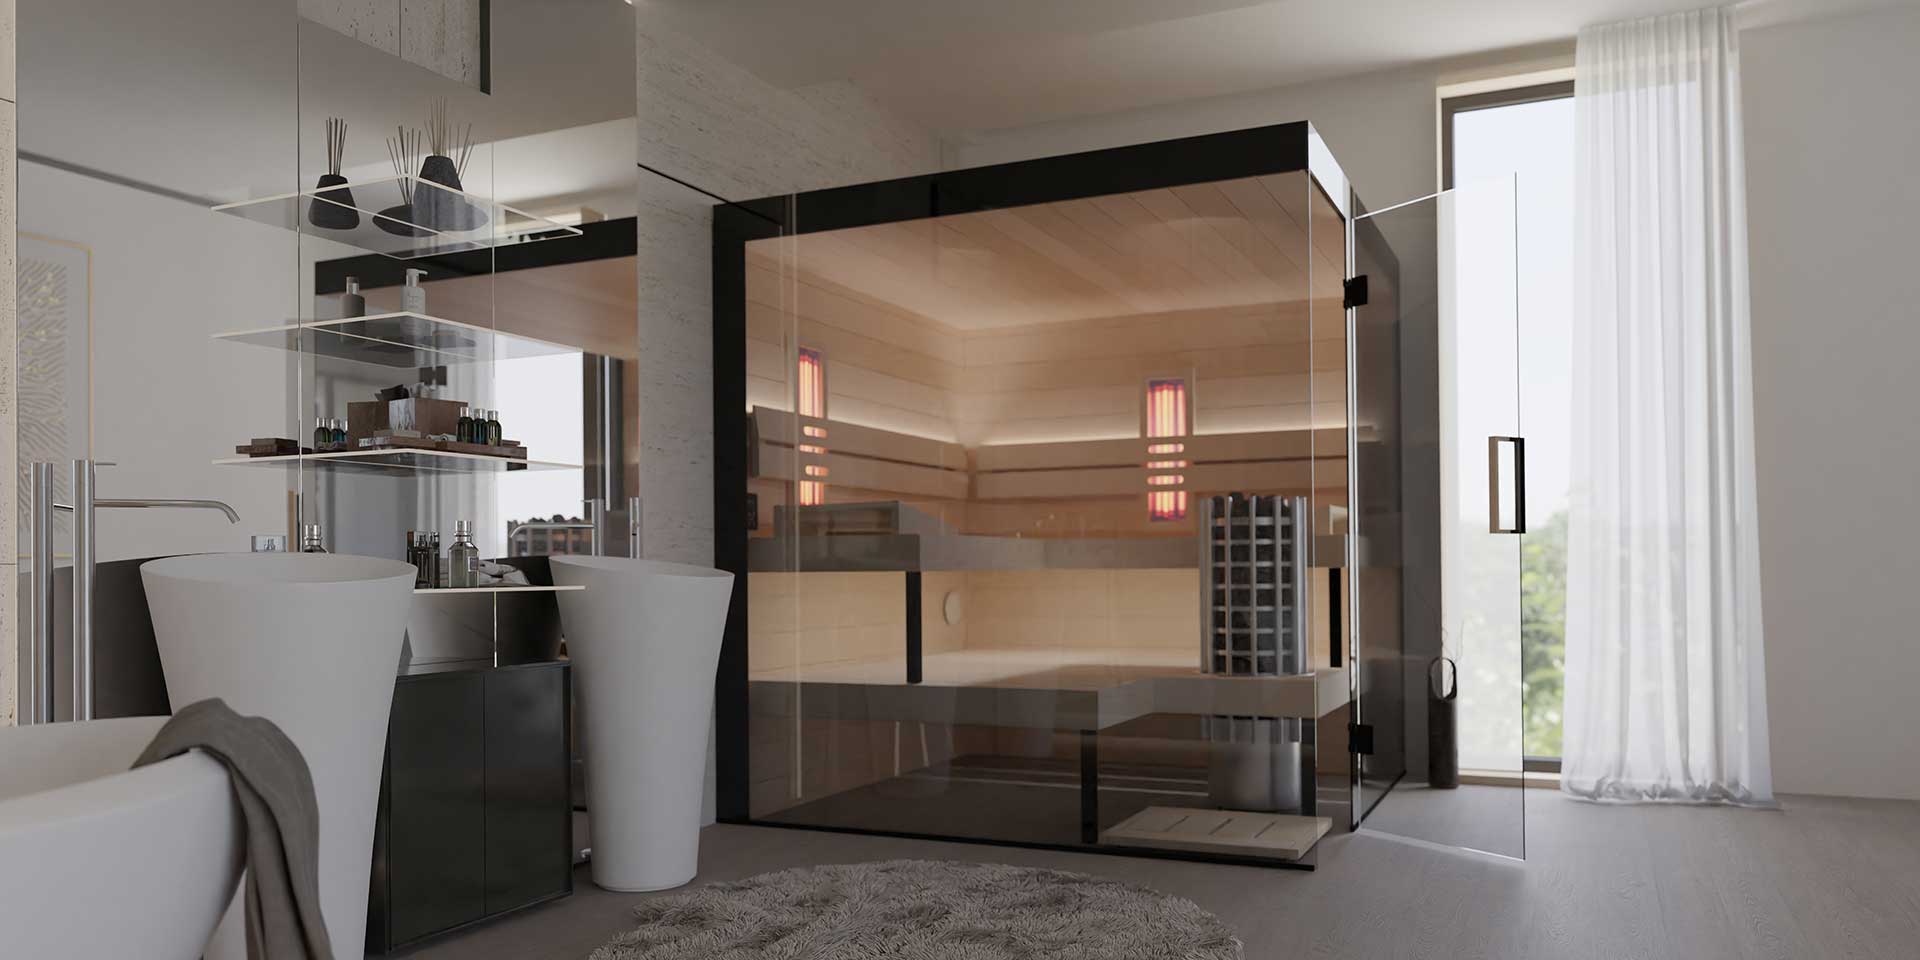 Indoor-Sauna im Badezimmer oder im Wohnbereich zuhause.